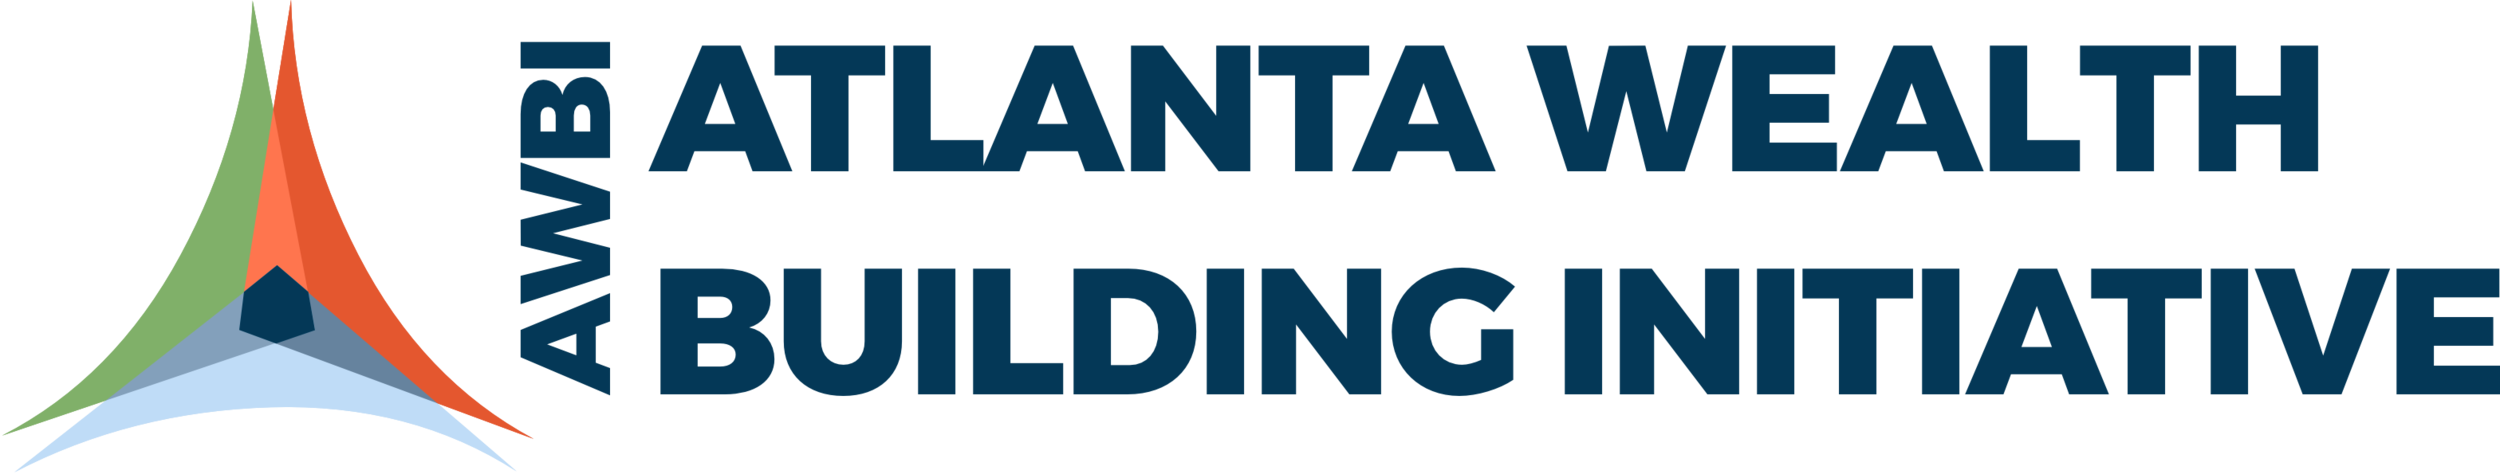 Atlanta Wealth Building Initiative